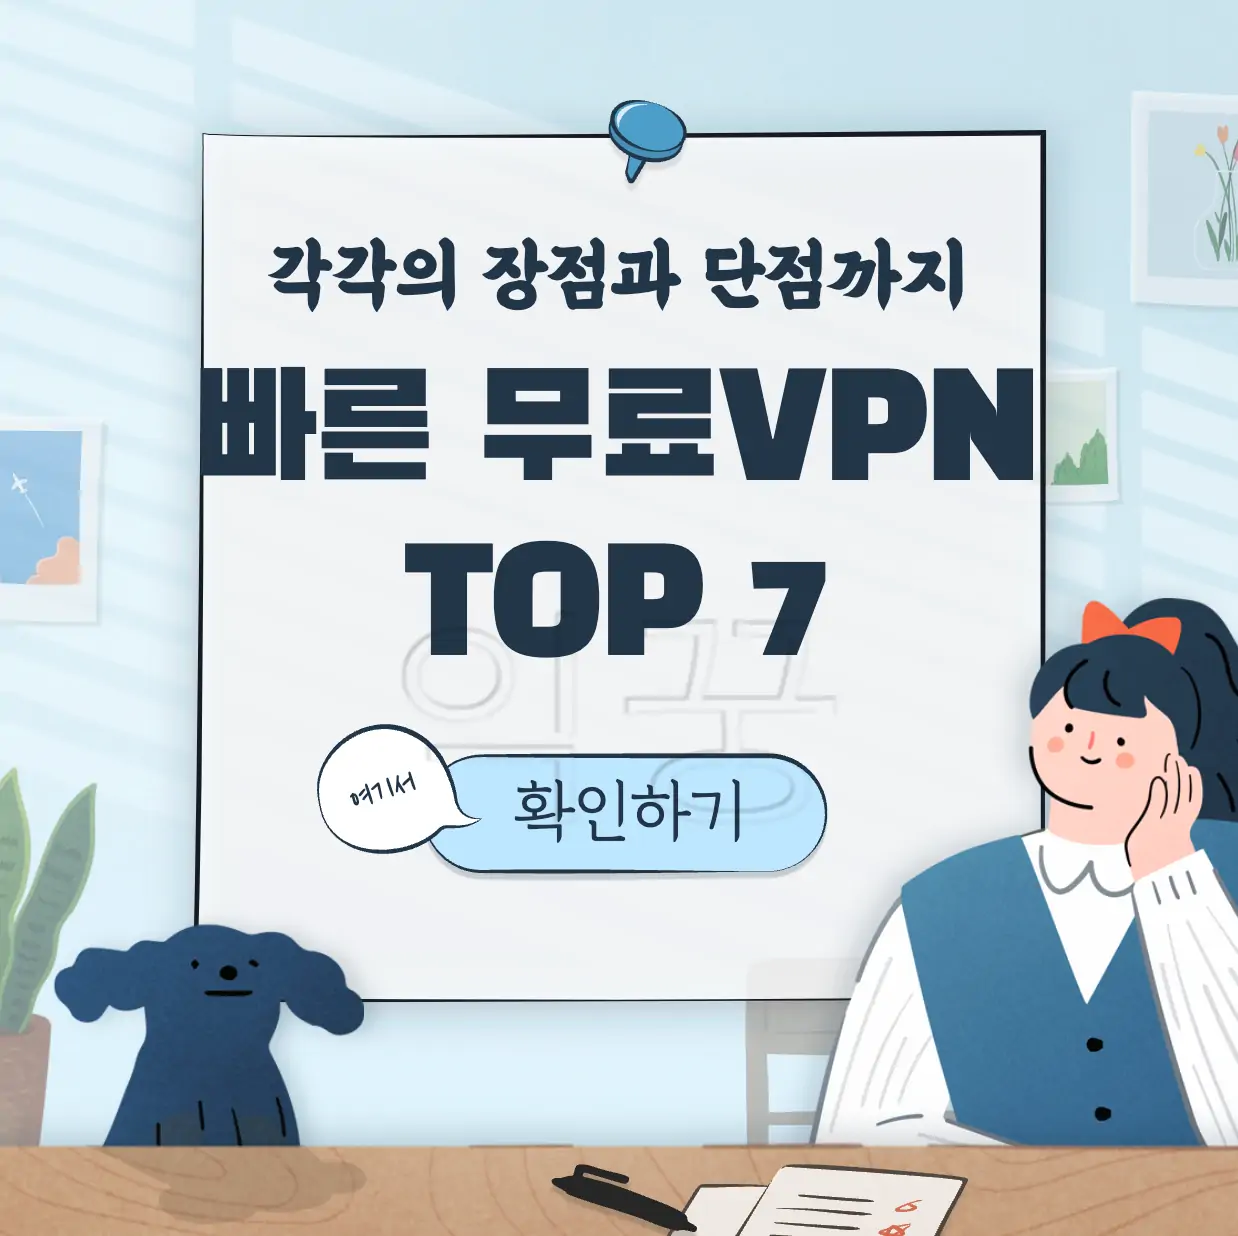 빠른 무료 VPN TOP 7 표지